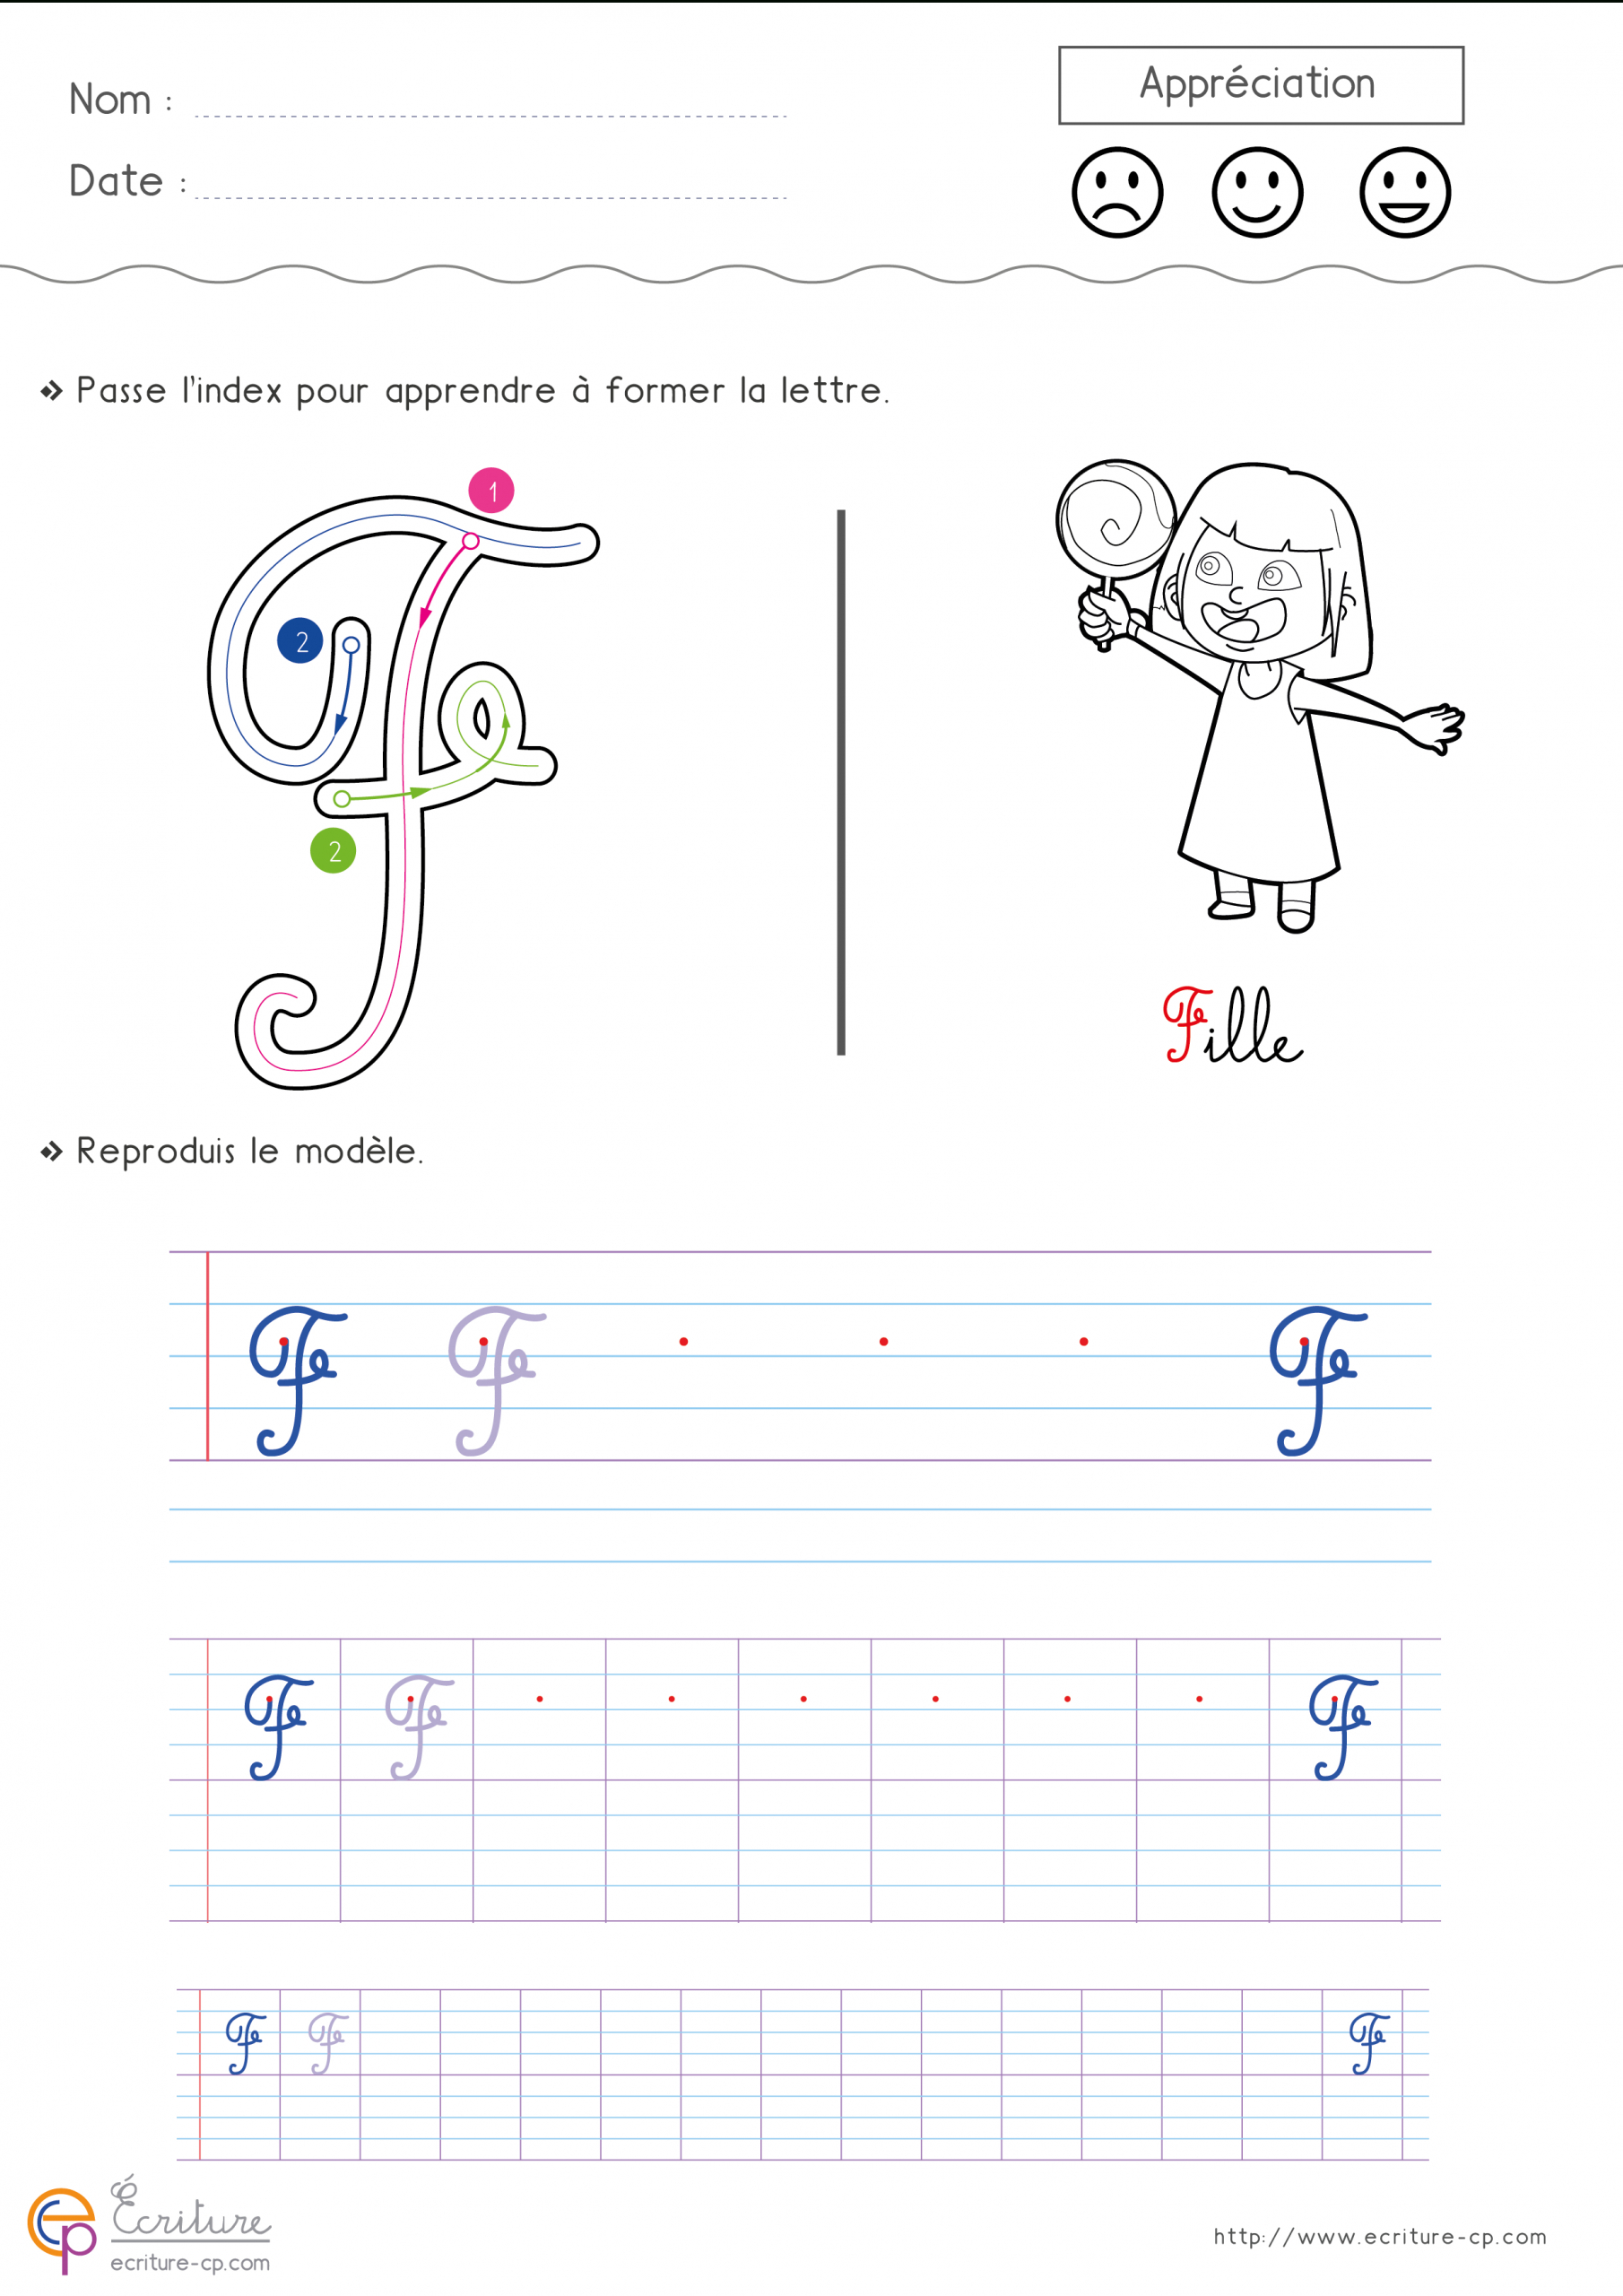 Apprendre A Ecrire Les Lettres En Minuscule - Primanyc destiné Lettre En Minuscule